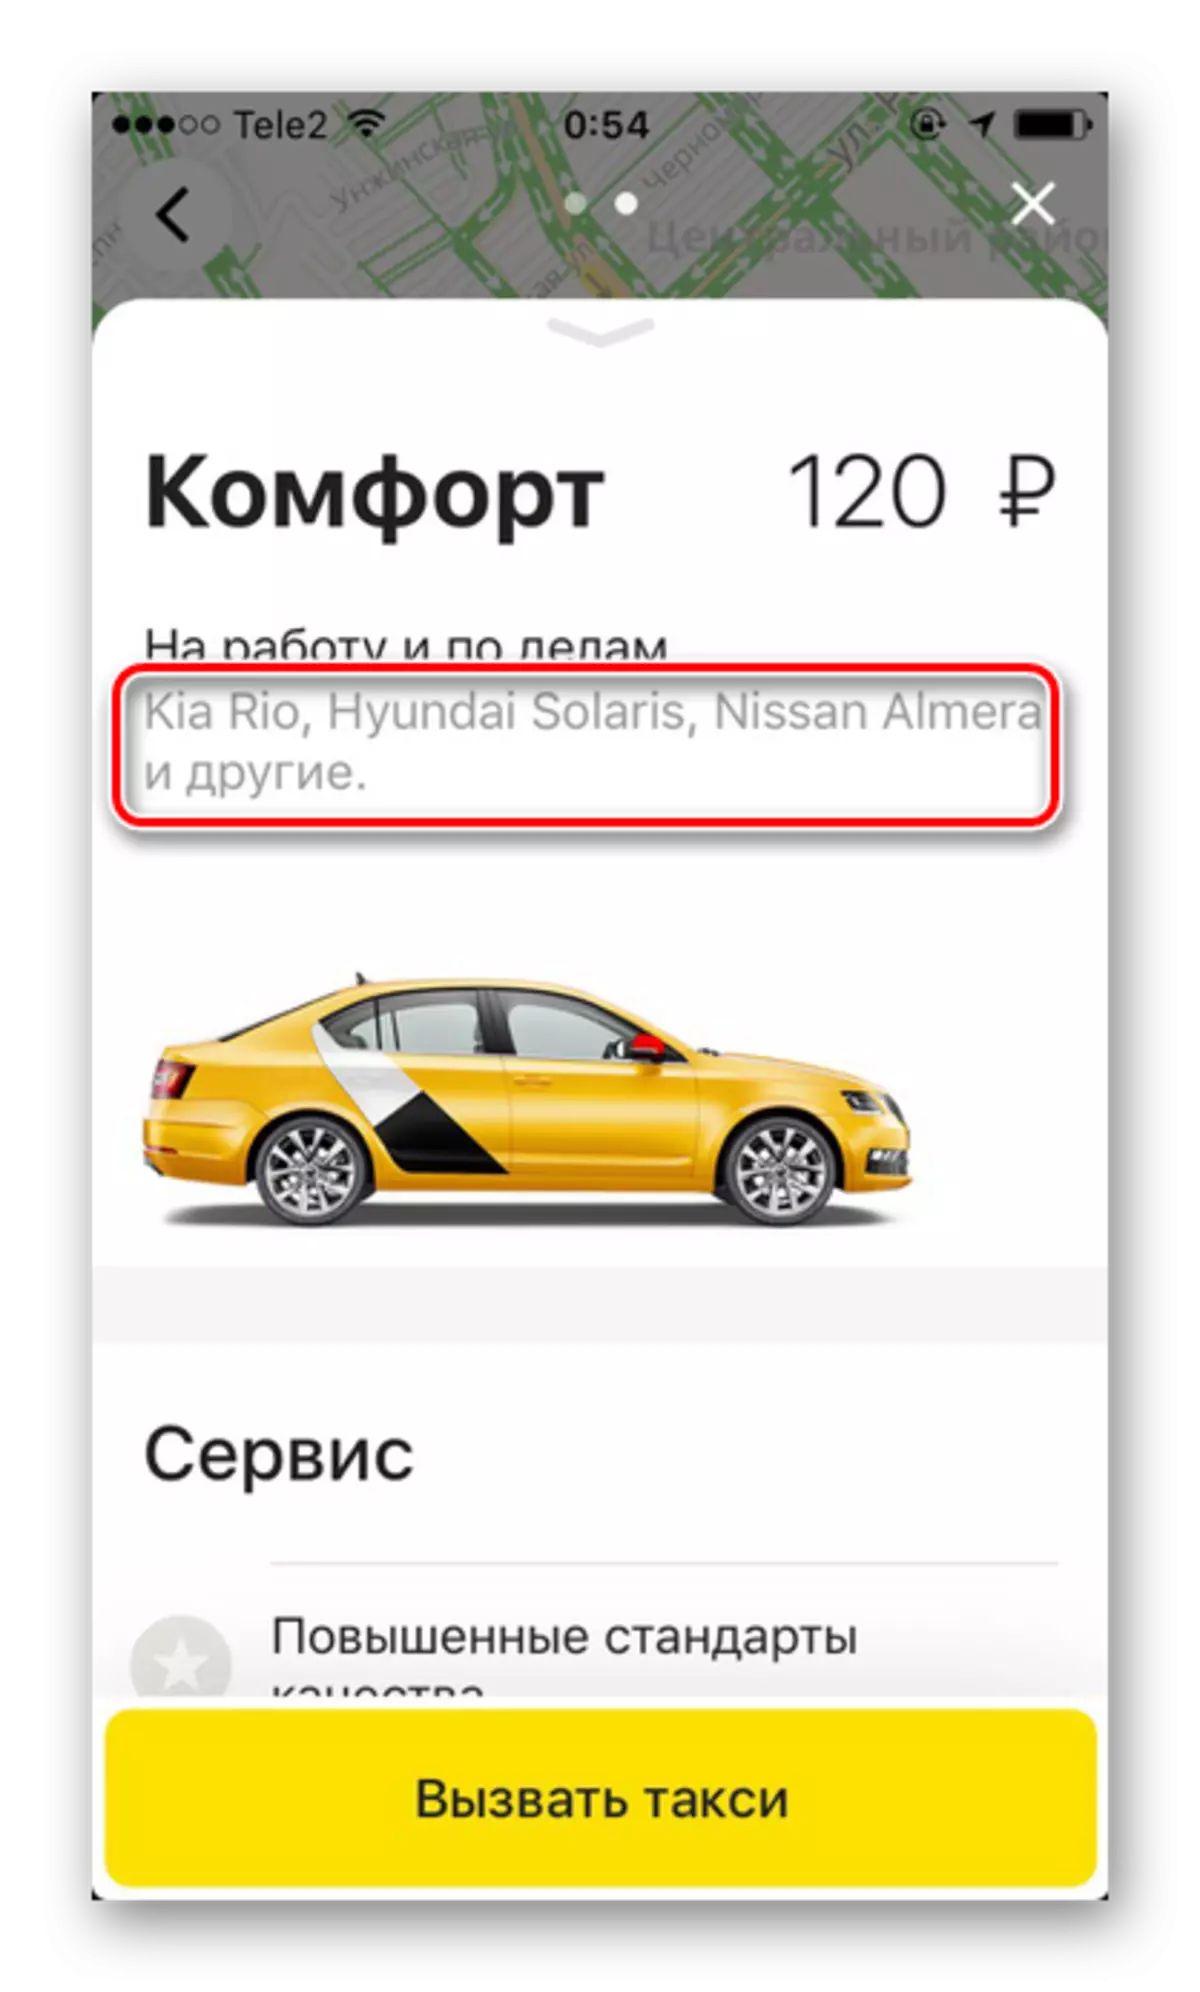 Brandị igwe na nkasi obi tariffic na Yandex.taxi na iPhone